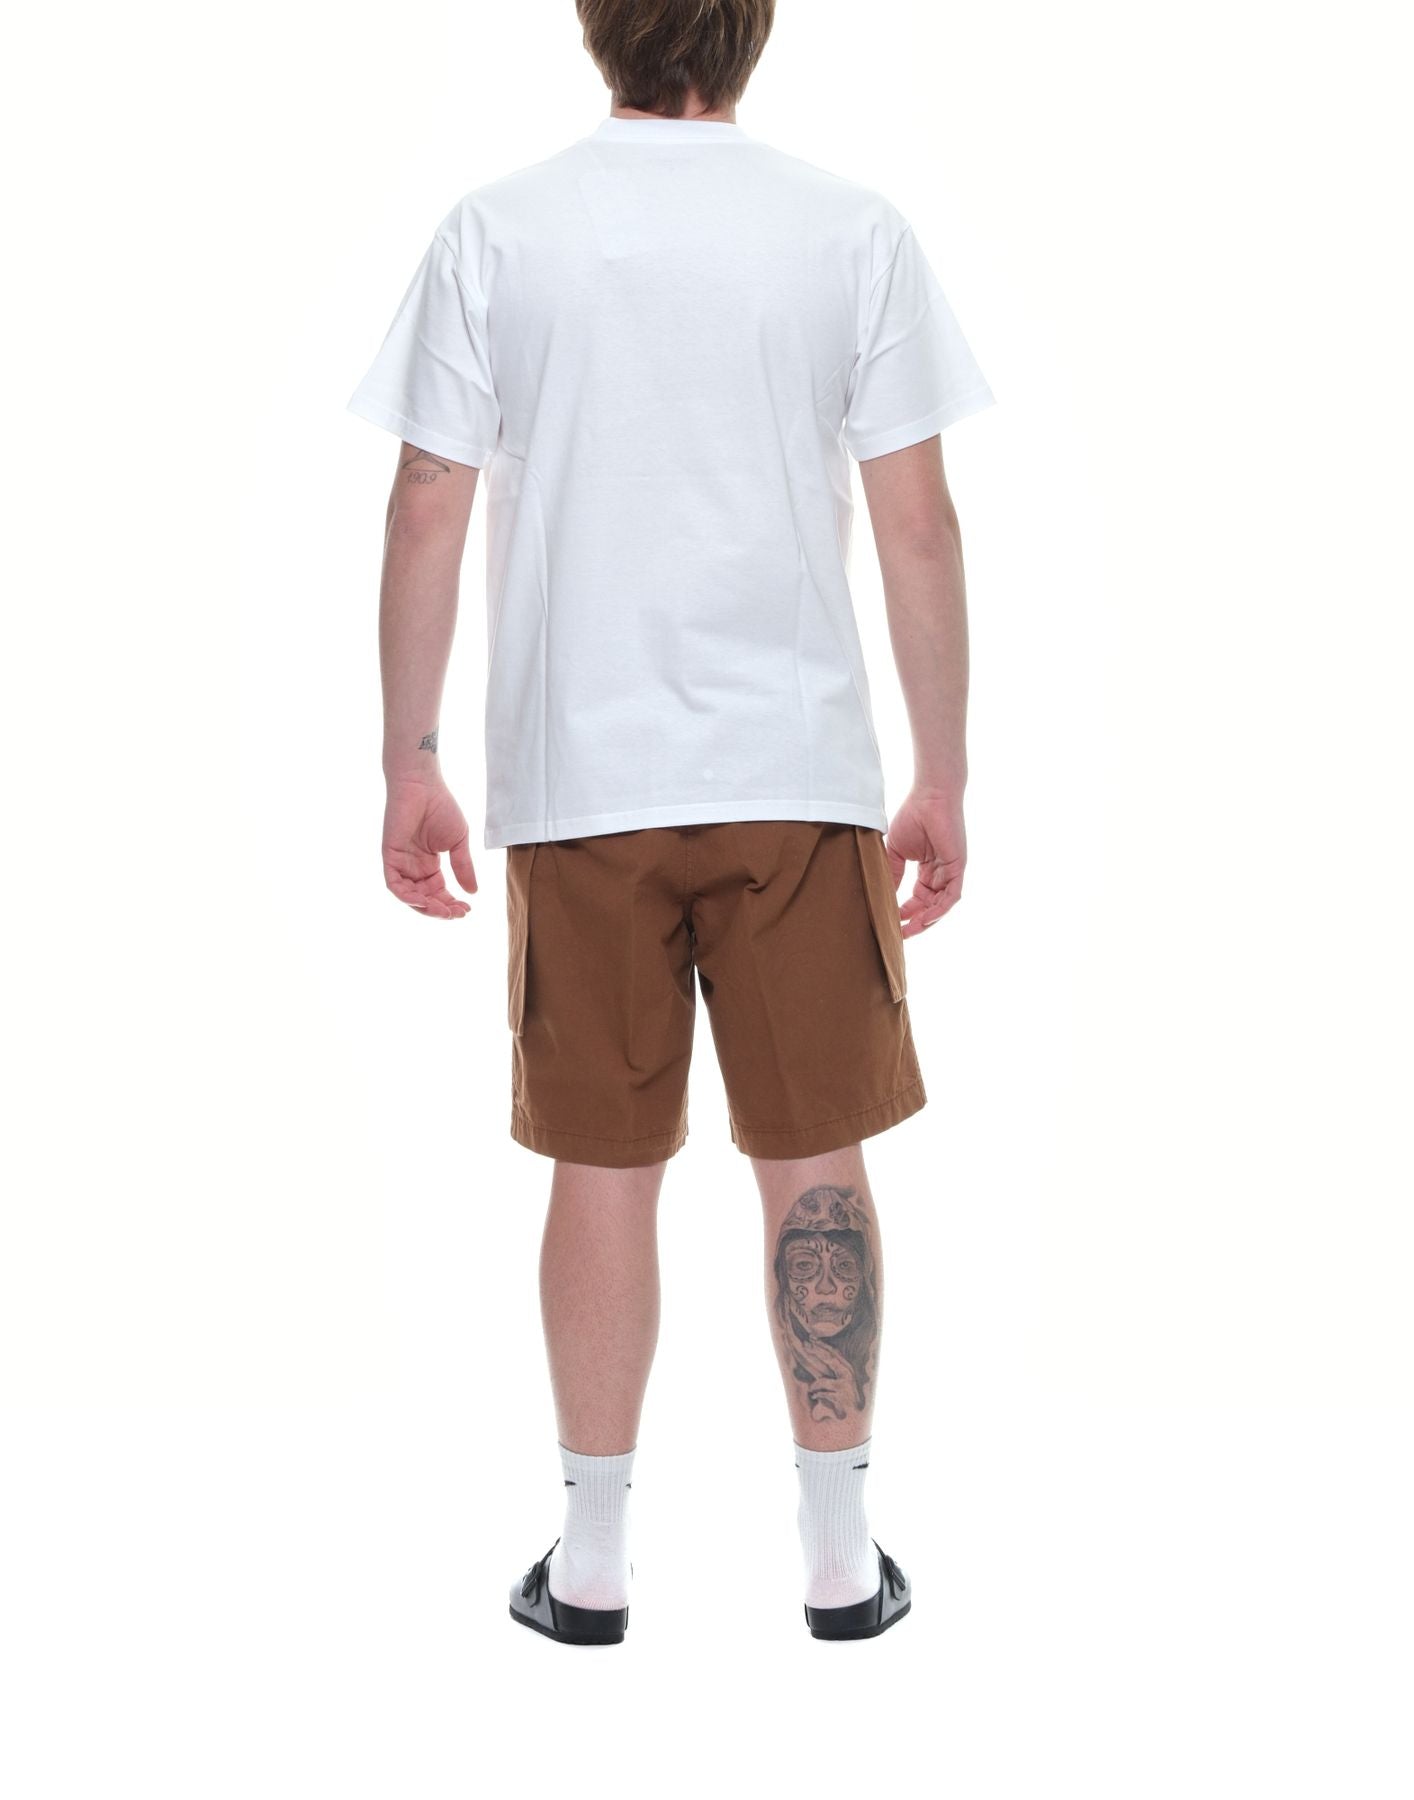 Camiseta hombre i033160 camiseta de goteo blanco carhartt wip